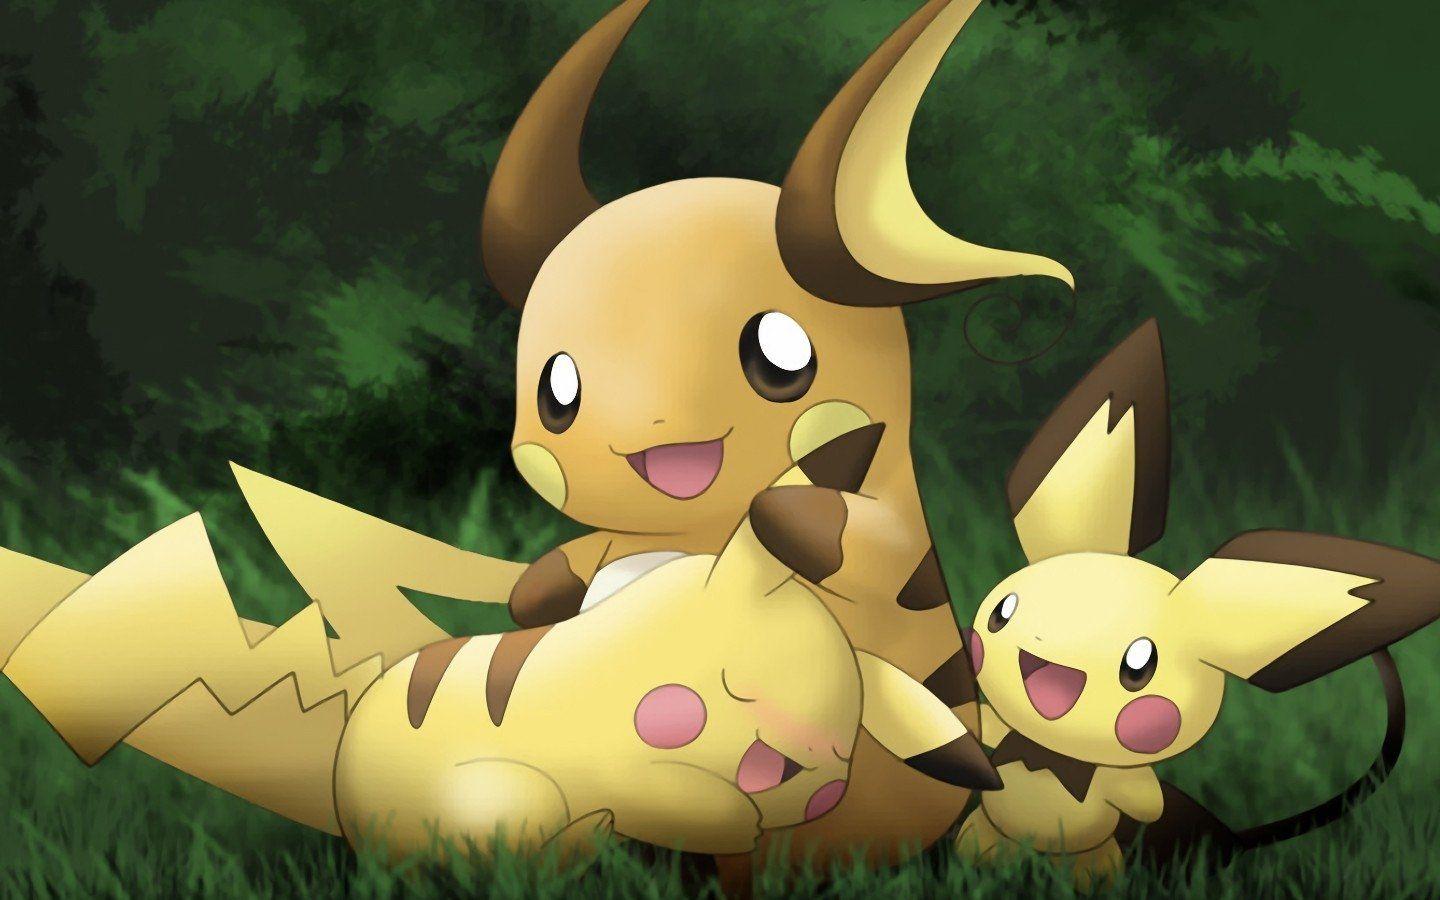 Raichu (Pokémon) HD Wallpaper and Background Image